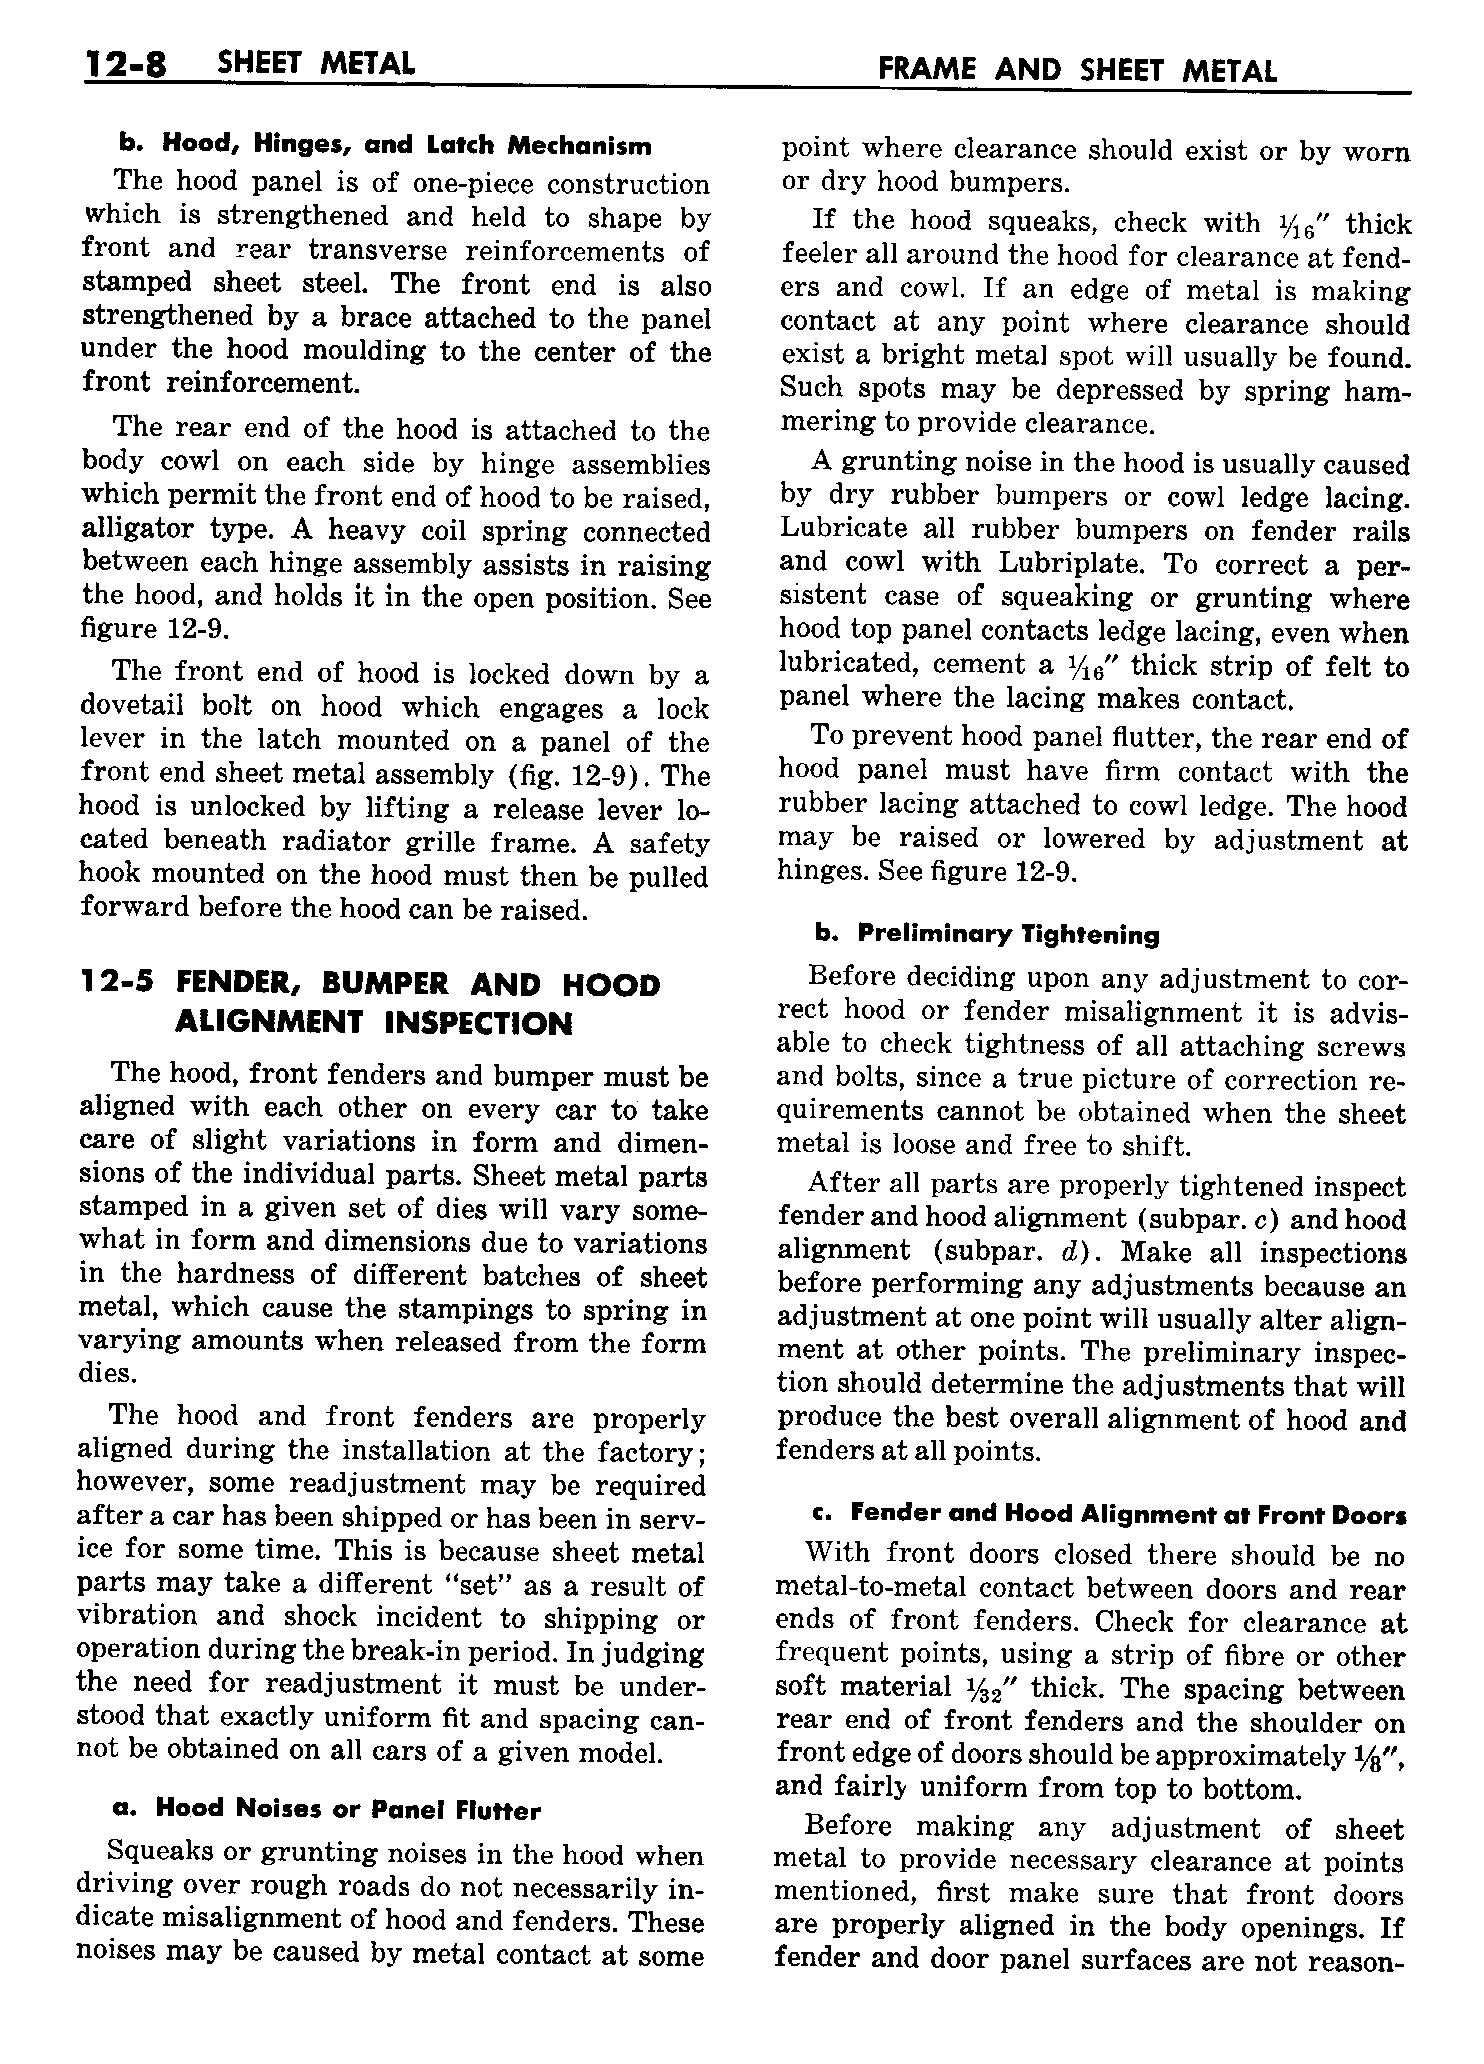 n_13 1958 Buick Shop Manual - Frame & Sheet Metal_8.jpg